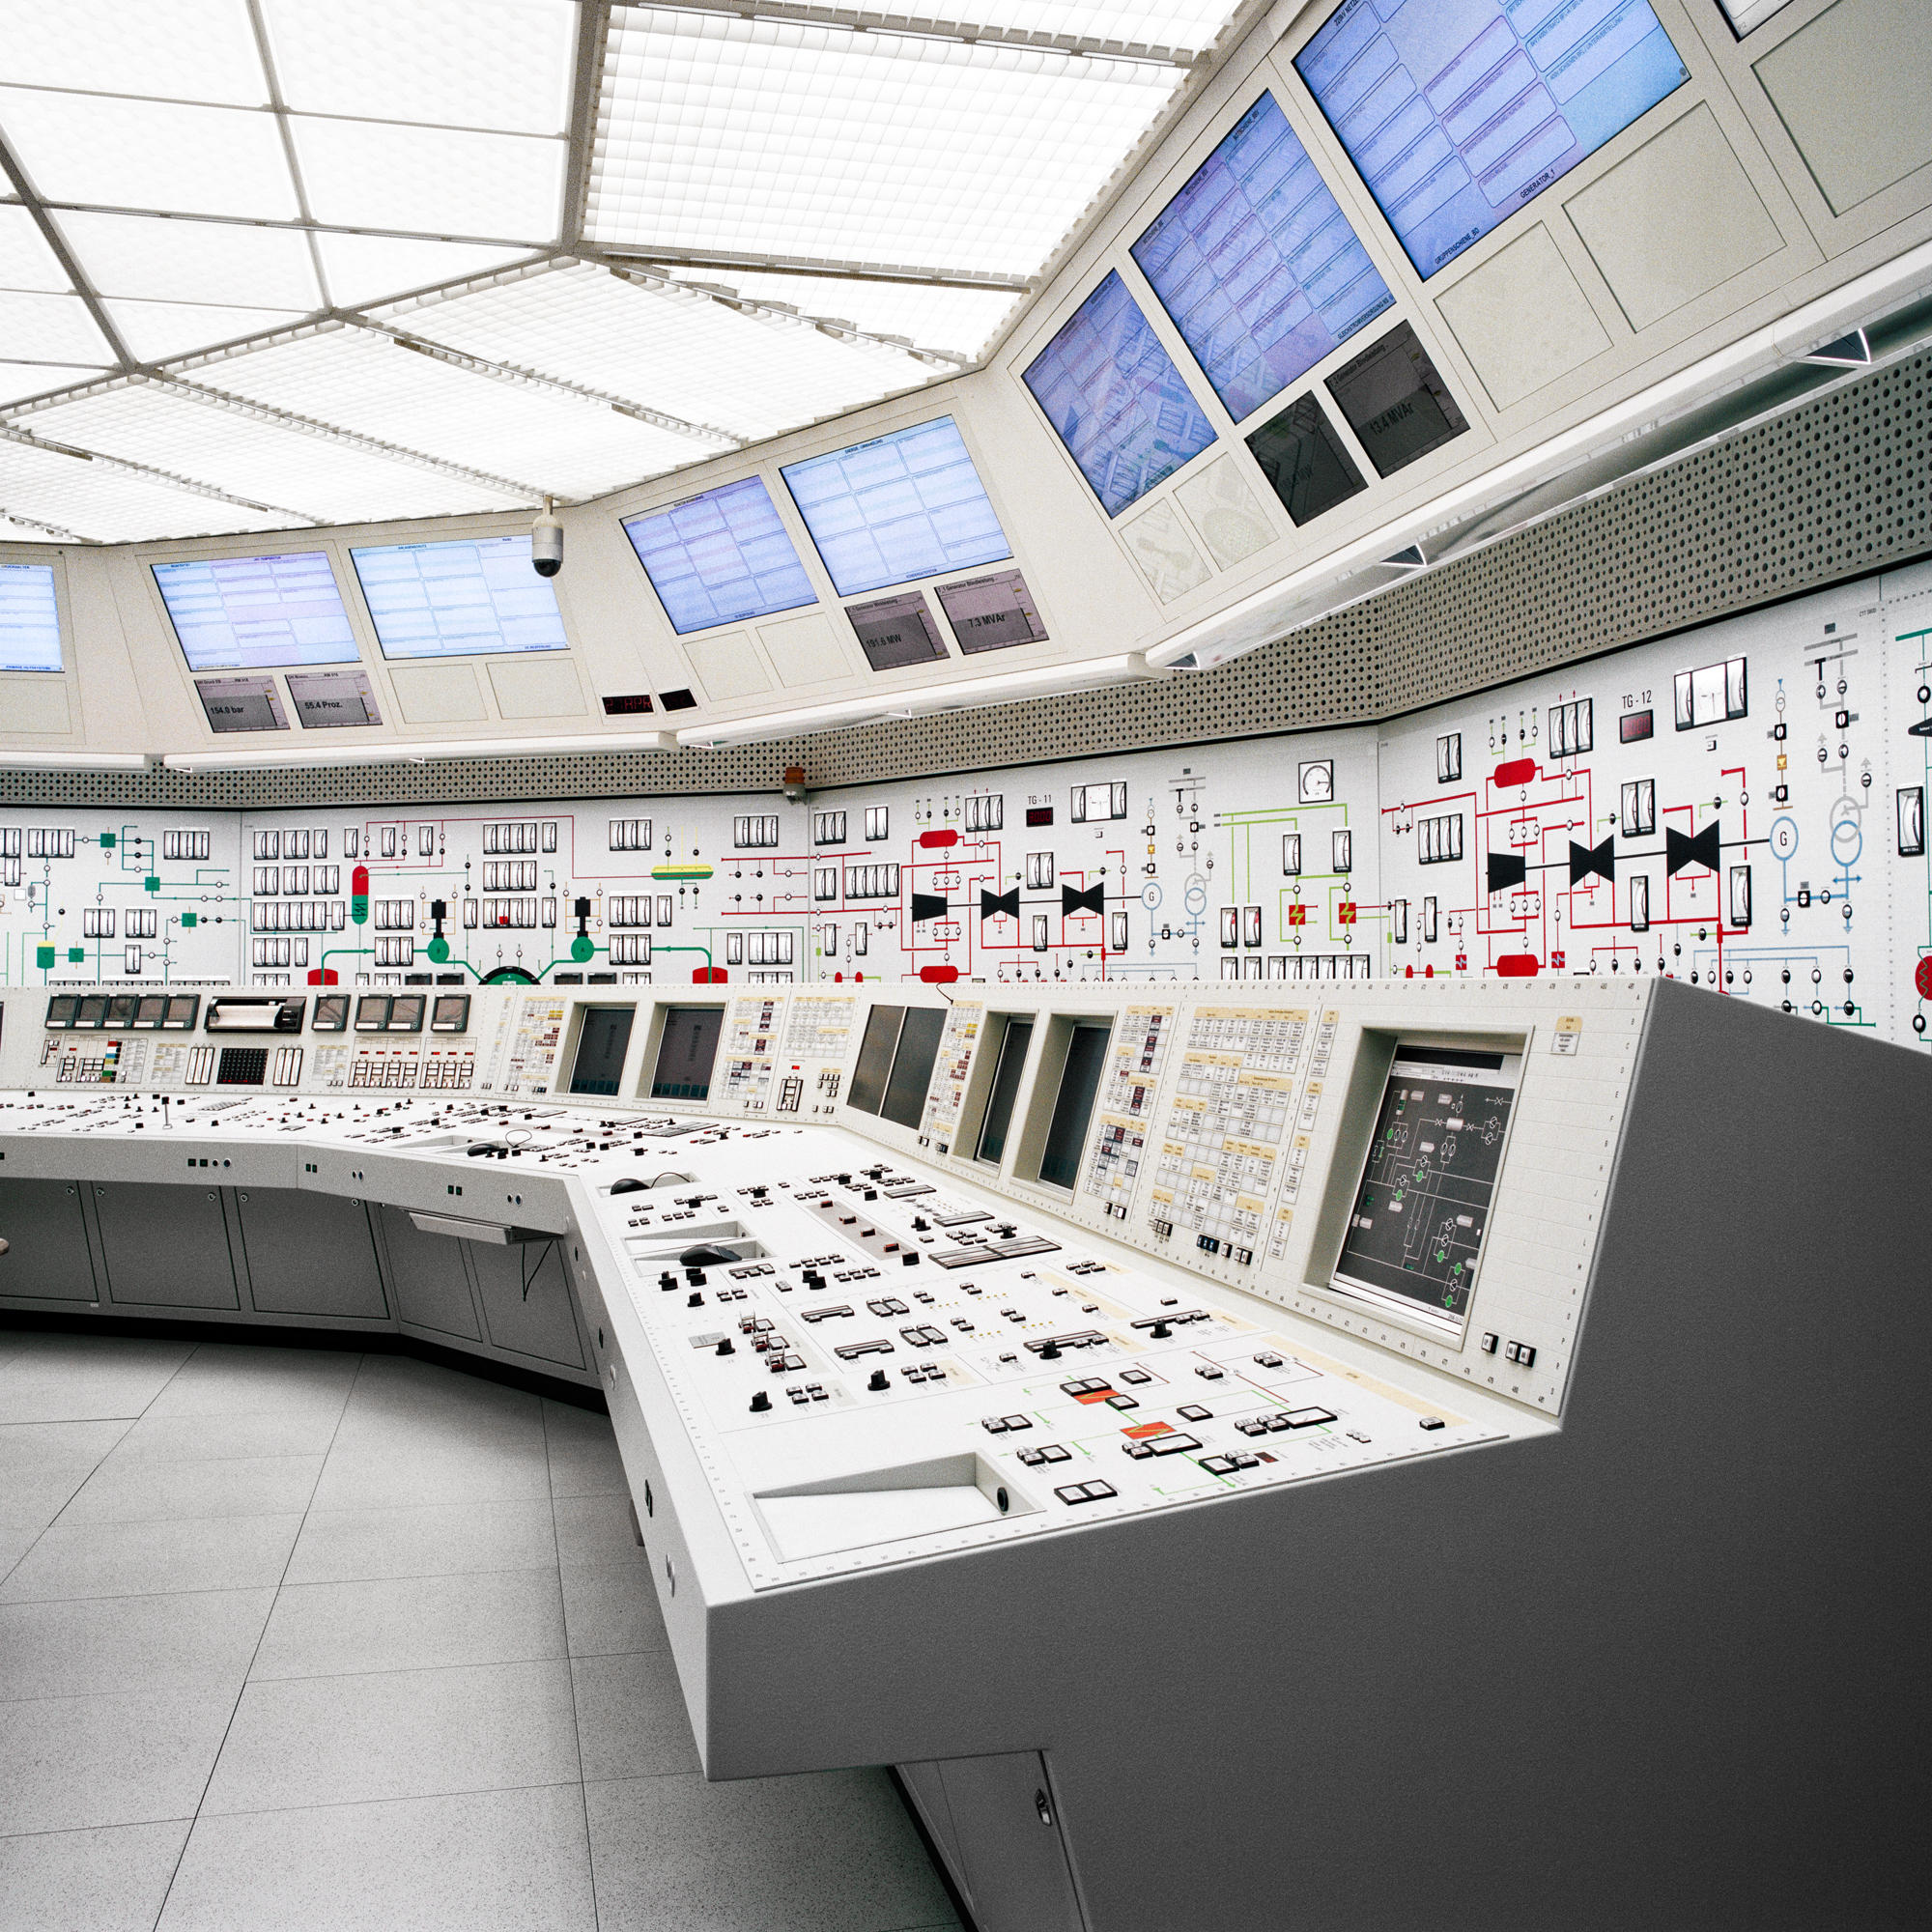 ベツナウ原子力発電所のシミュレーション・管制室（アールガウ州デッティンゲン）